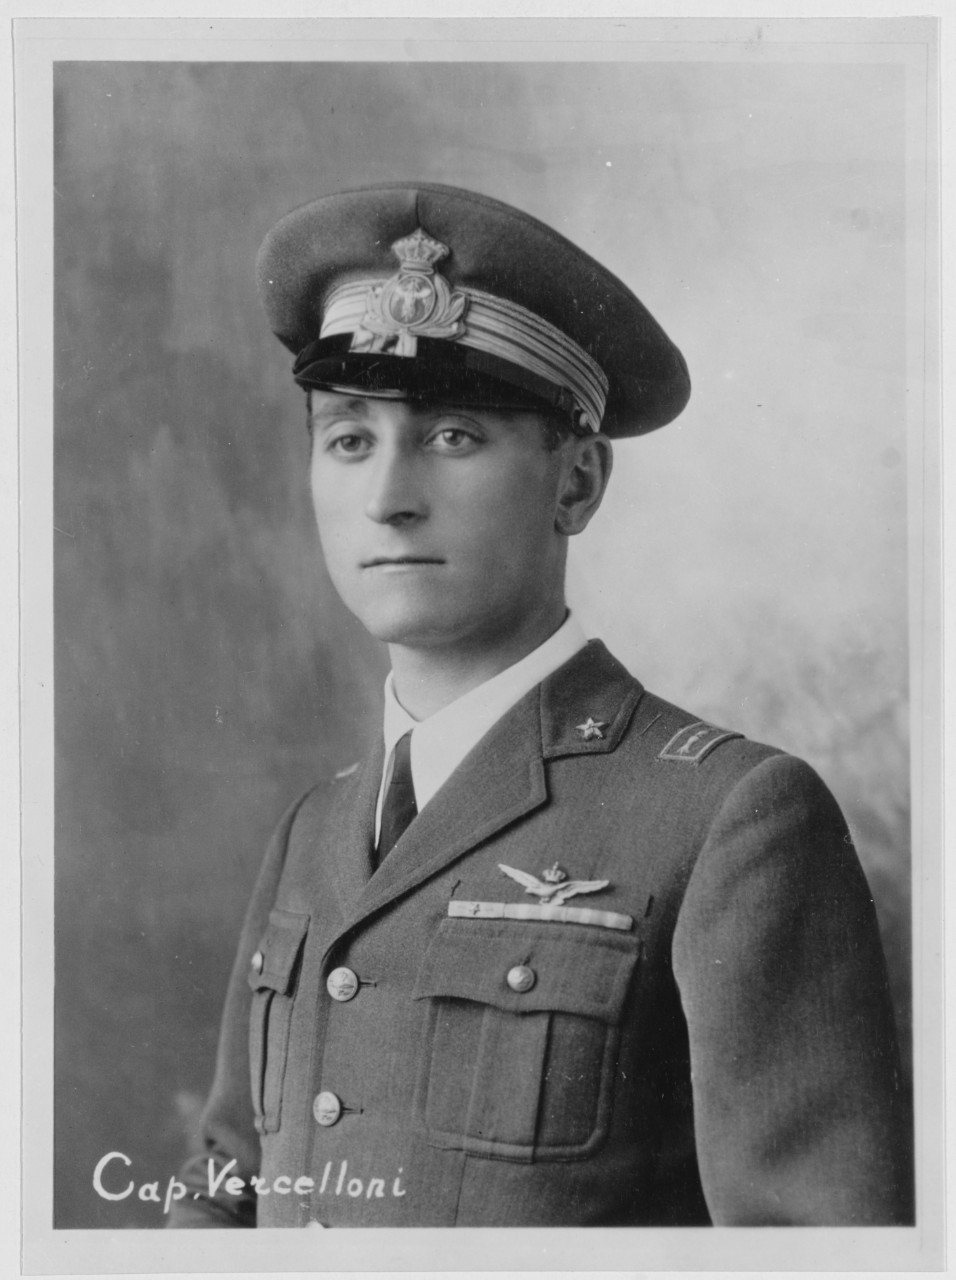 Captain Vercelloni, Italian Aviators who flew Savoia-Machetti Seaplanes Trans-Atlantic, 1933